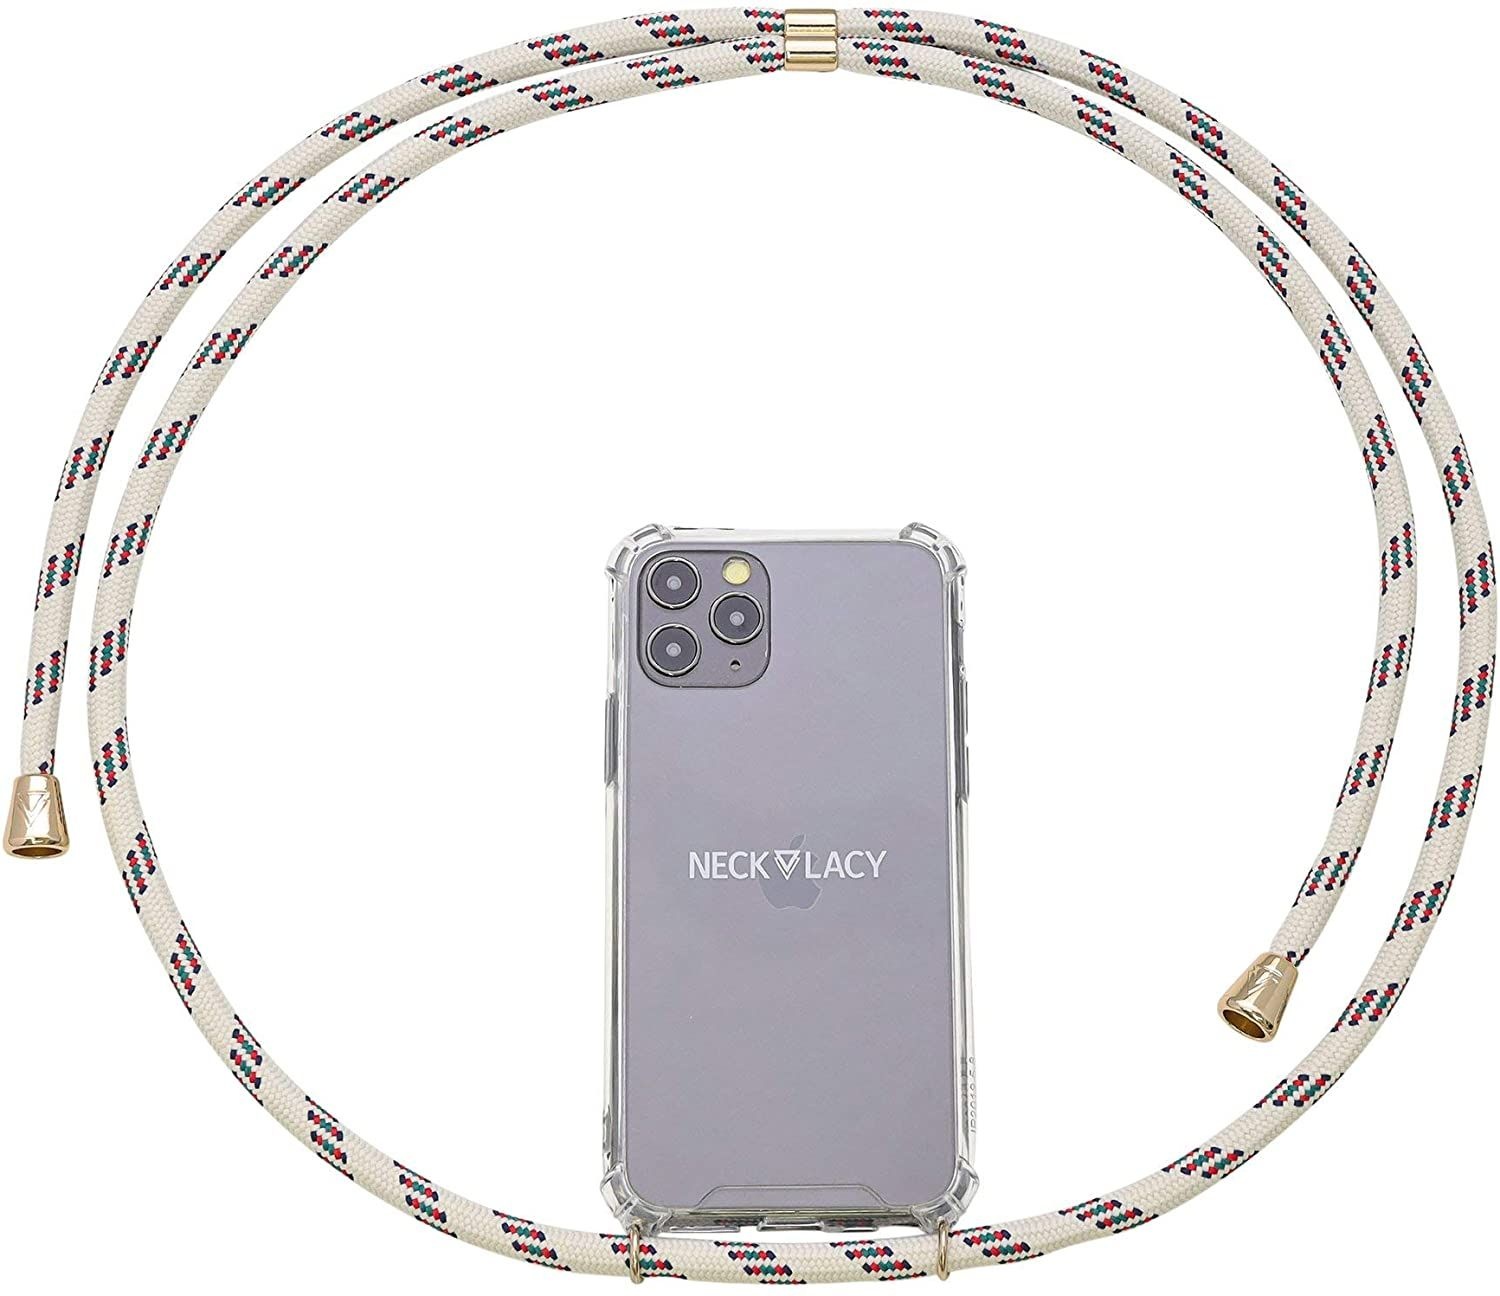 NECKLACY Handykette Handyhülle zum umhängen - für iPhone 7/8 - Case / Handyhülle mit Band zum umhängen - Trageband Hals mit Kordel - Smartphone Necklace, Classic Birch